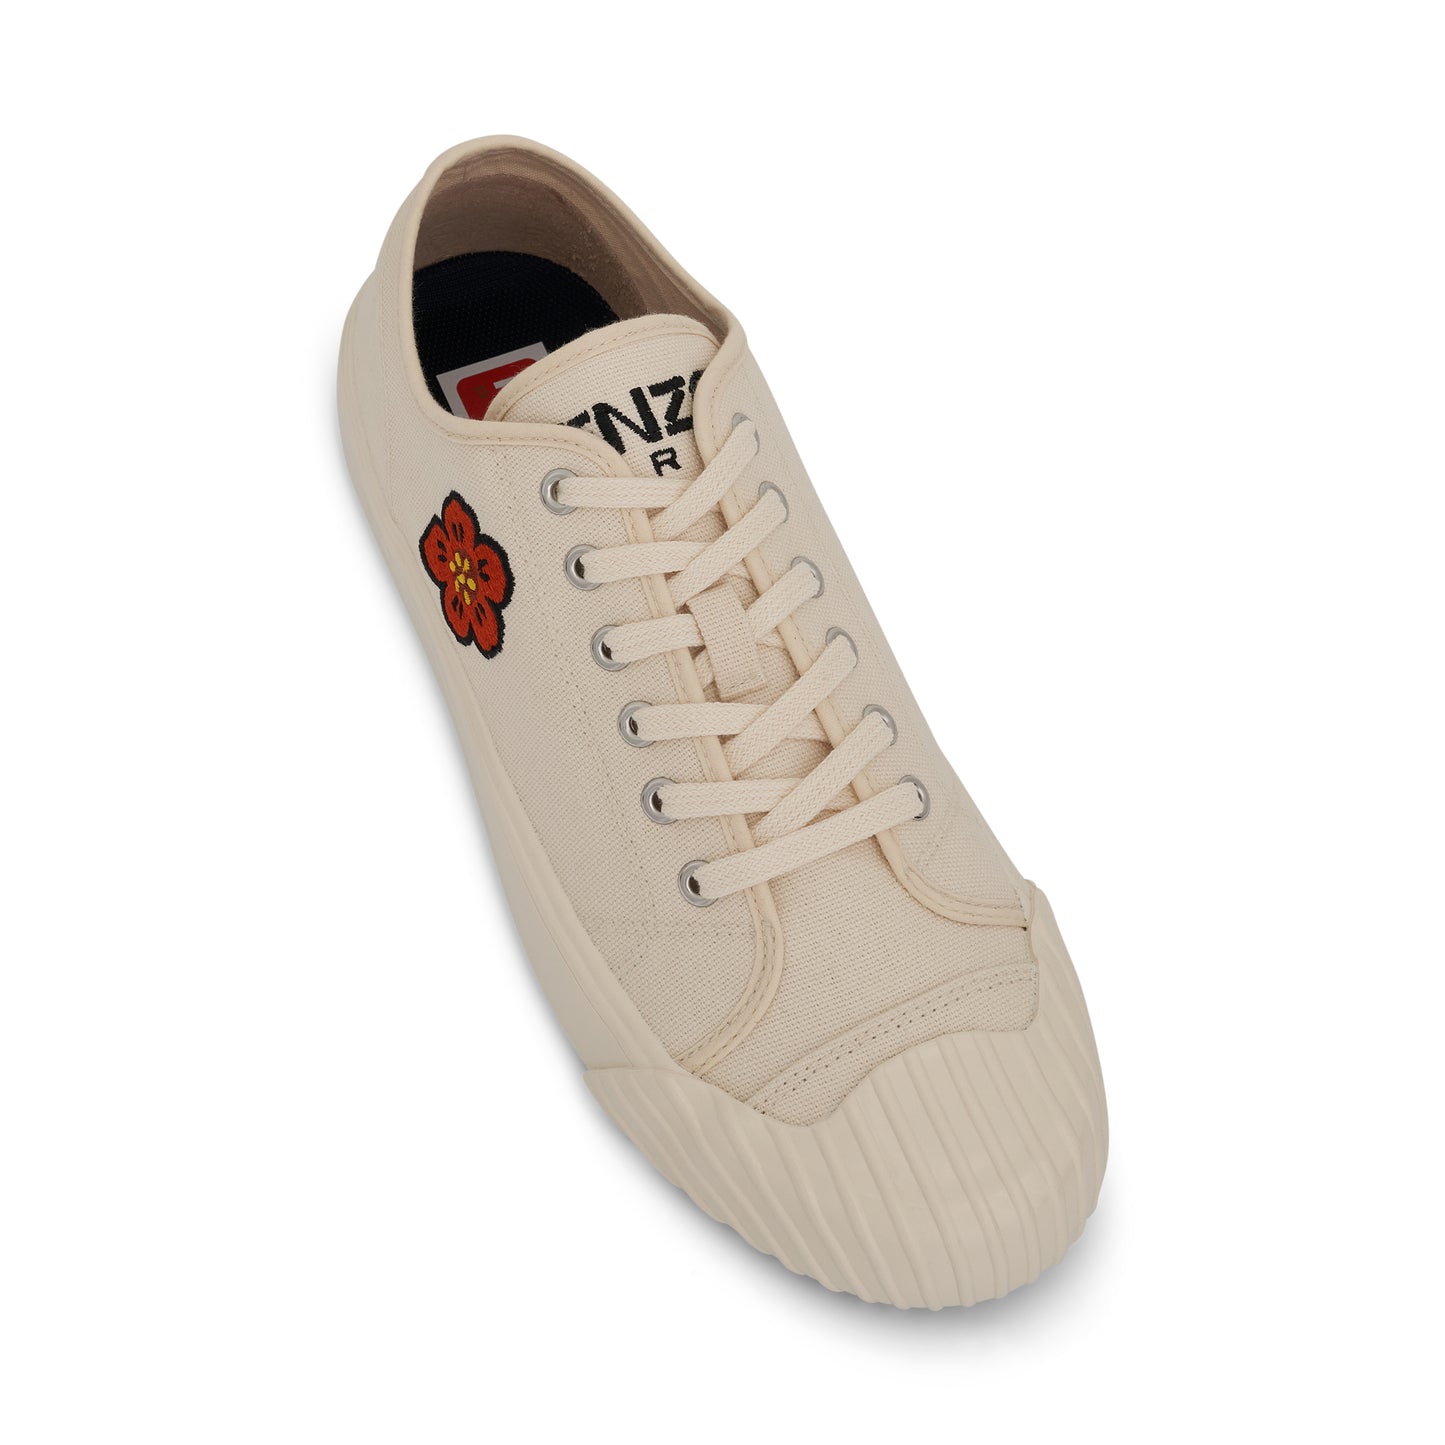 Low Top School Sneaker in Cream